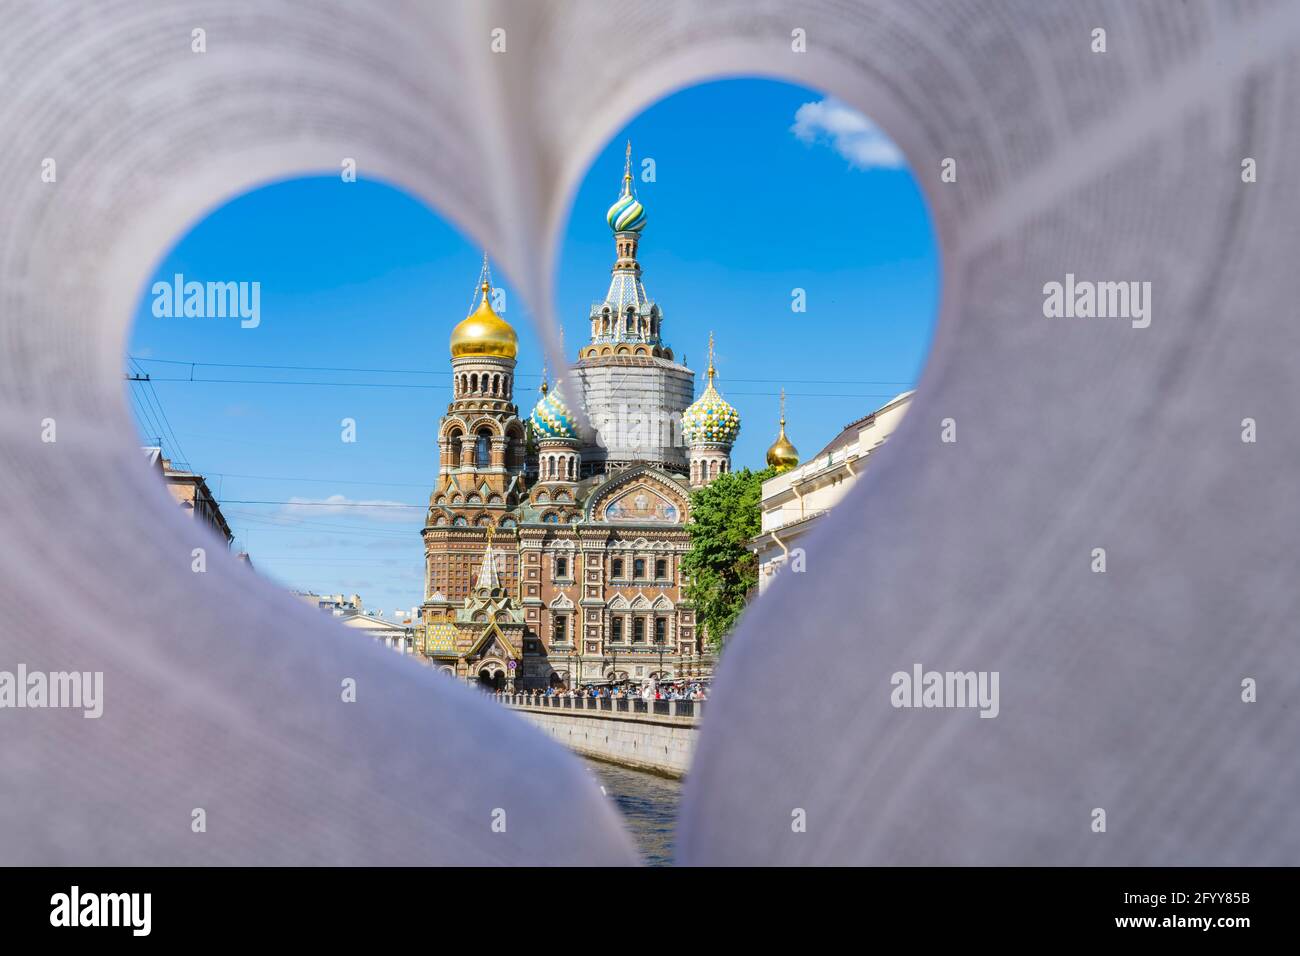 La Chiesa del Salvatore sul sangue. Russia San Pietroburgo. Amore per la città sul fiume Neva. Mi piace viaggiare. Foto Stock